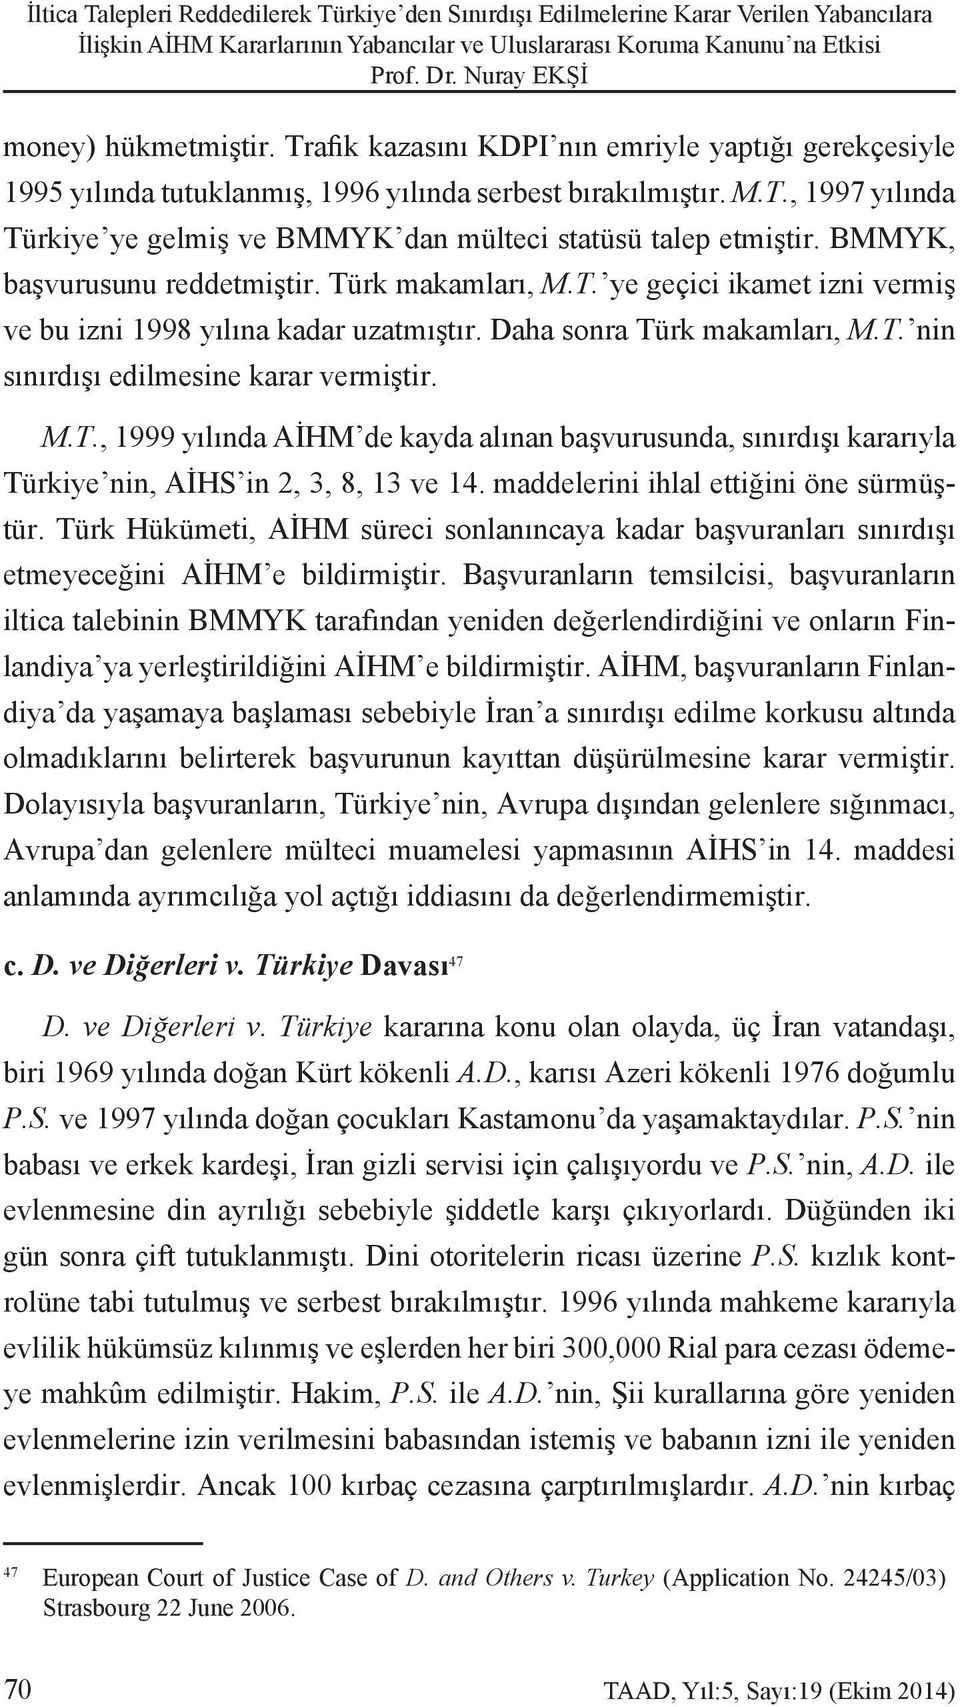 BMMYK, başvurusunu reddetmiştir. Türk makamları, M.T. ye geçici ikamet izni vermiş ve bu izni 1998 yılına kadar uzatmıştır. Daha sonra Türk makamları, M.T. nin sınırdışı edilmesine karar vermiştir. M.T., 1999 yılında AİHM de kayda alınan başvurusunda, sınırdışı kararıyla Türkiye nin, AİHS in 2, 3, 8, 13 ve 14.